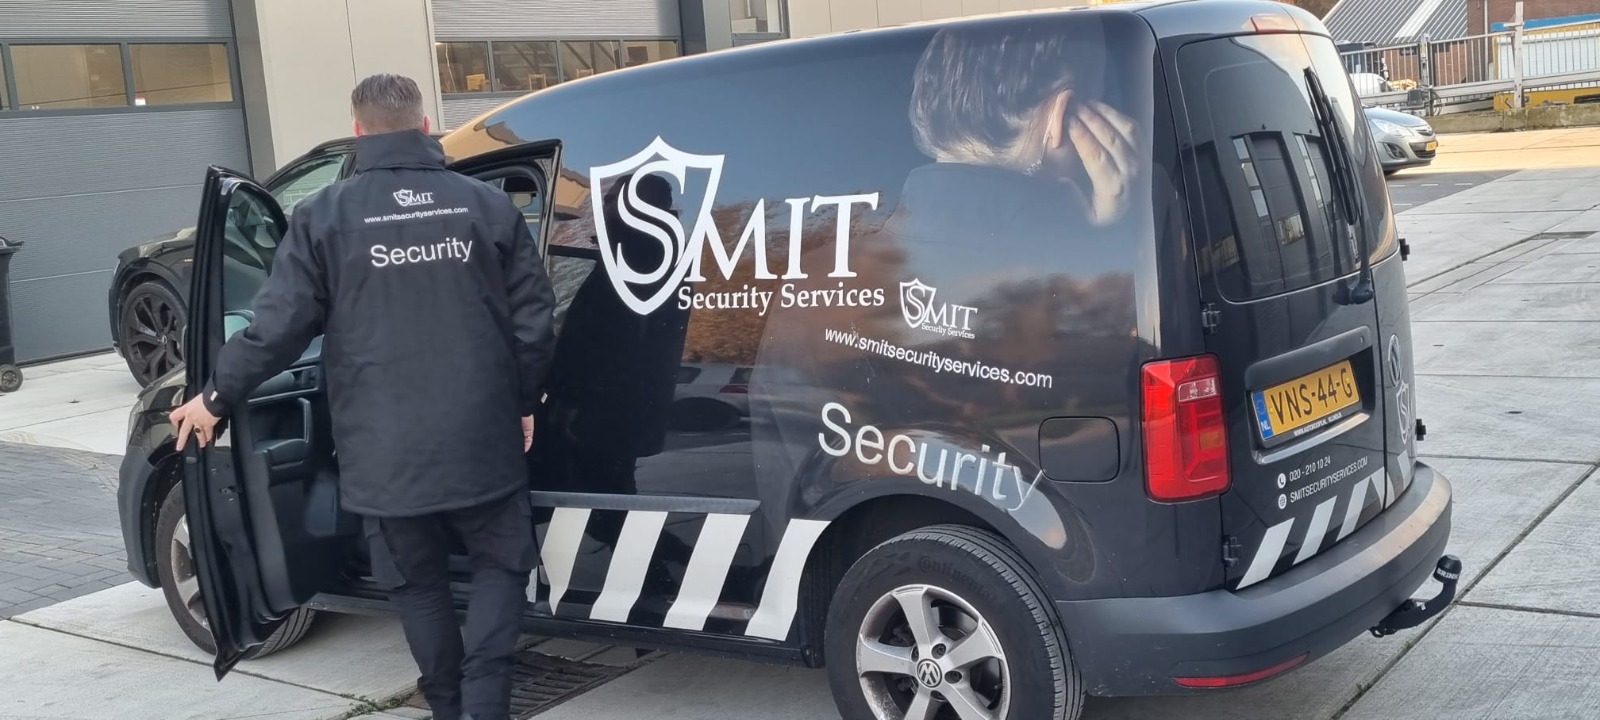 Beveiliger houdt toezicht in voertuig van Smit Security Services